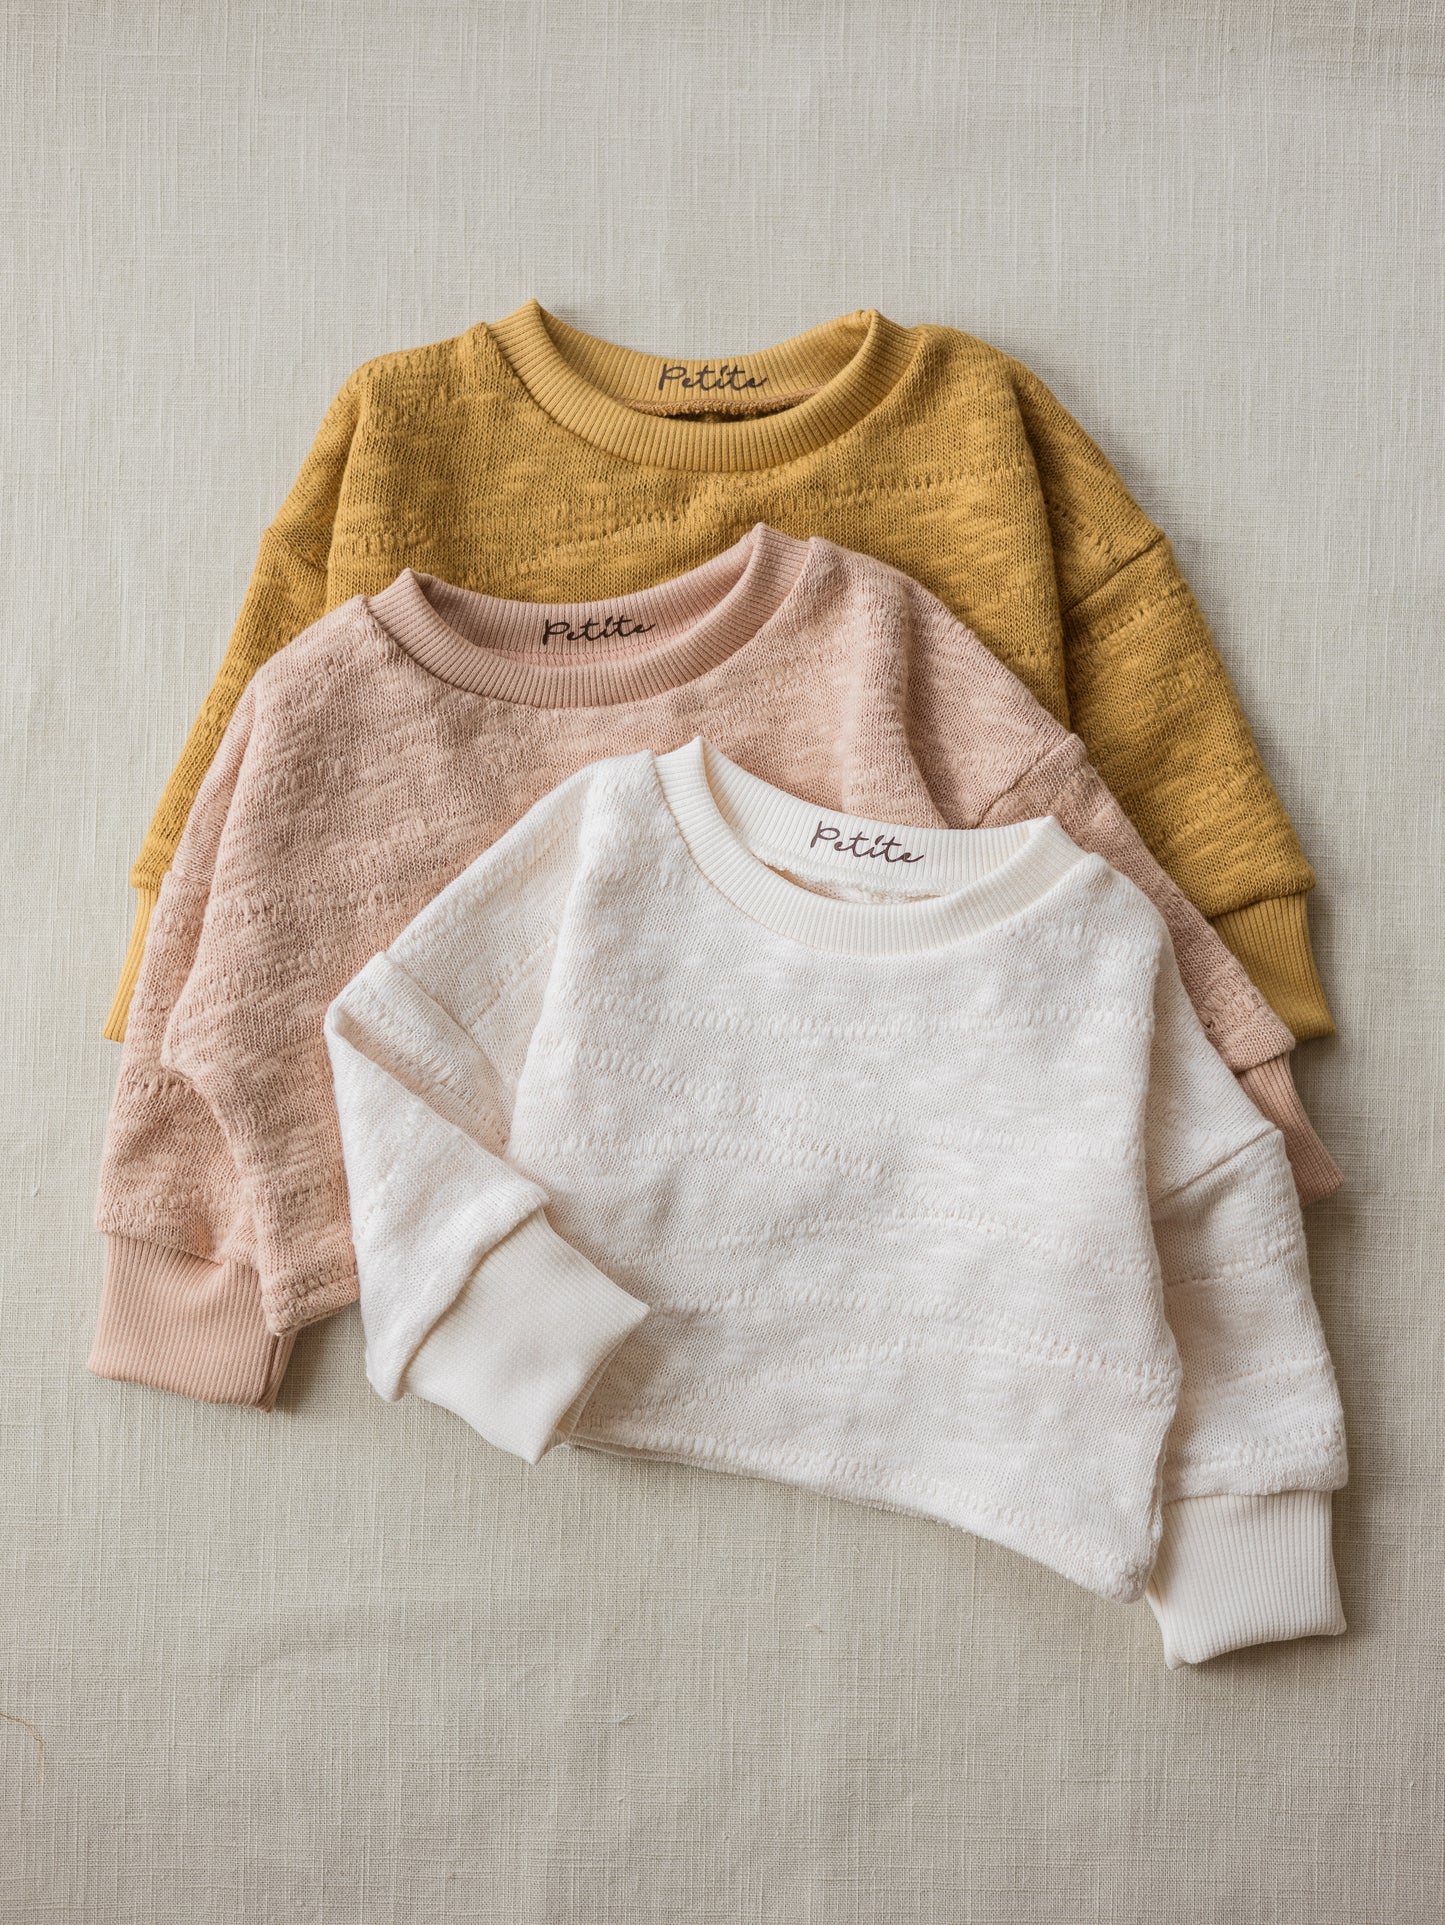 Sweater / Organic cotton knit